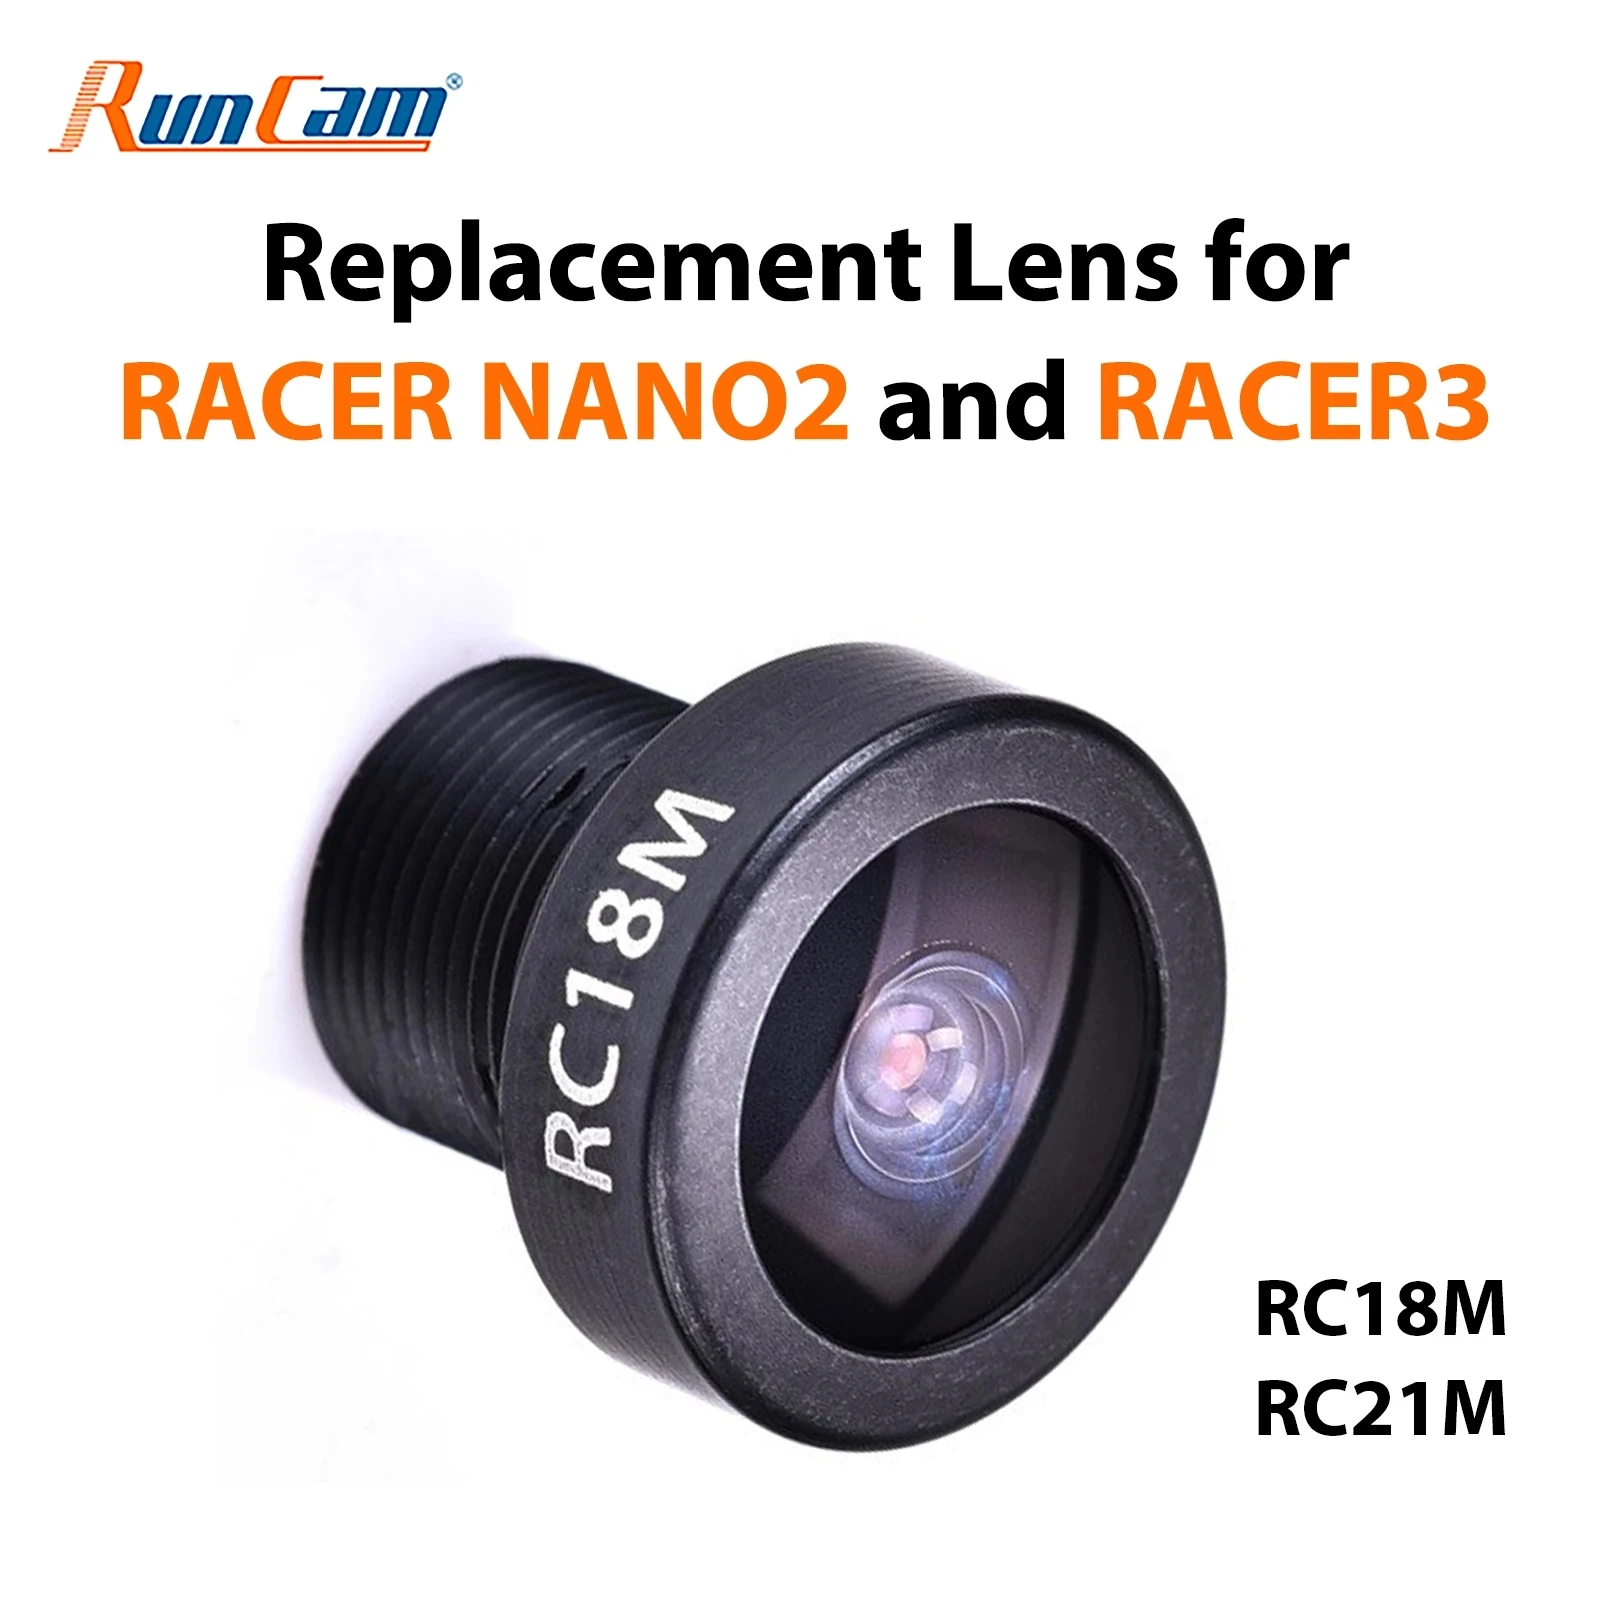 RunCam RC21M 2.1 mm Objectif pour série RunCam Racer Micro Swift/Sparrow 1/2 Robin 